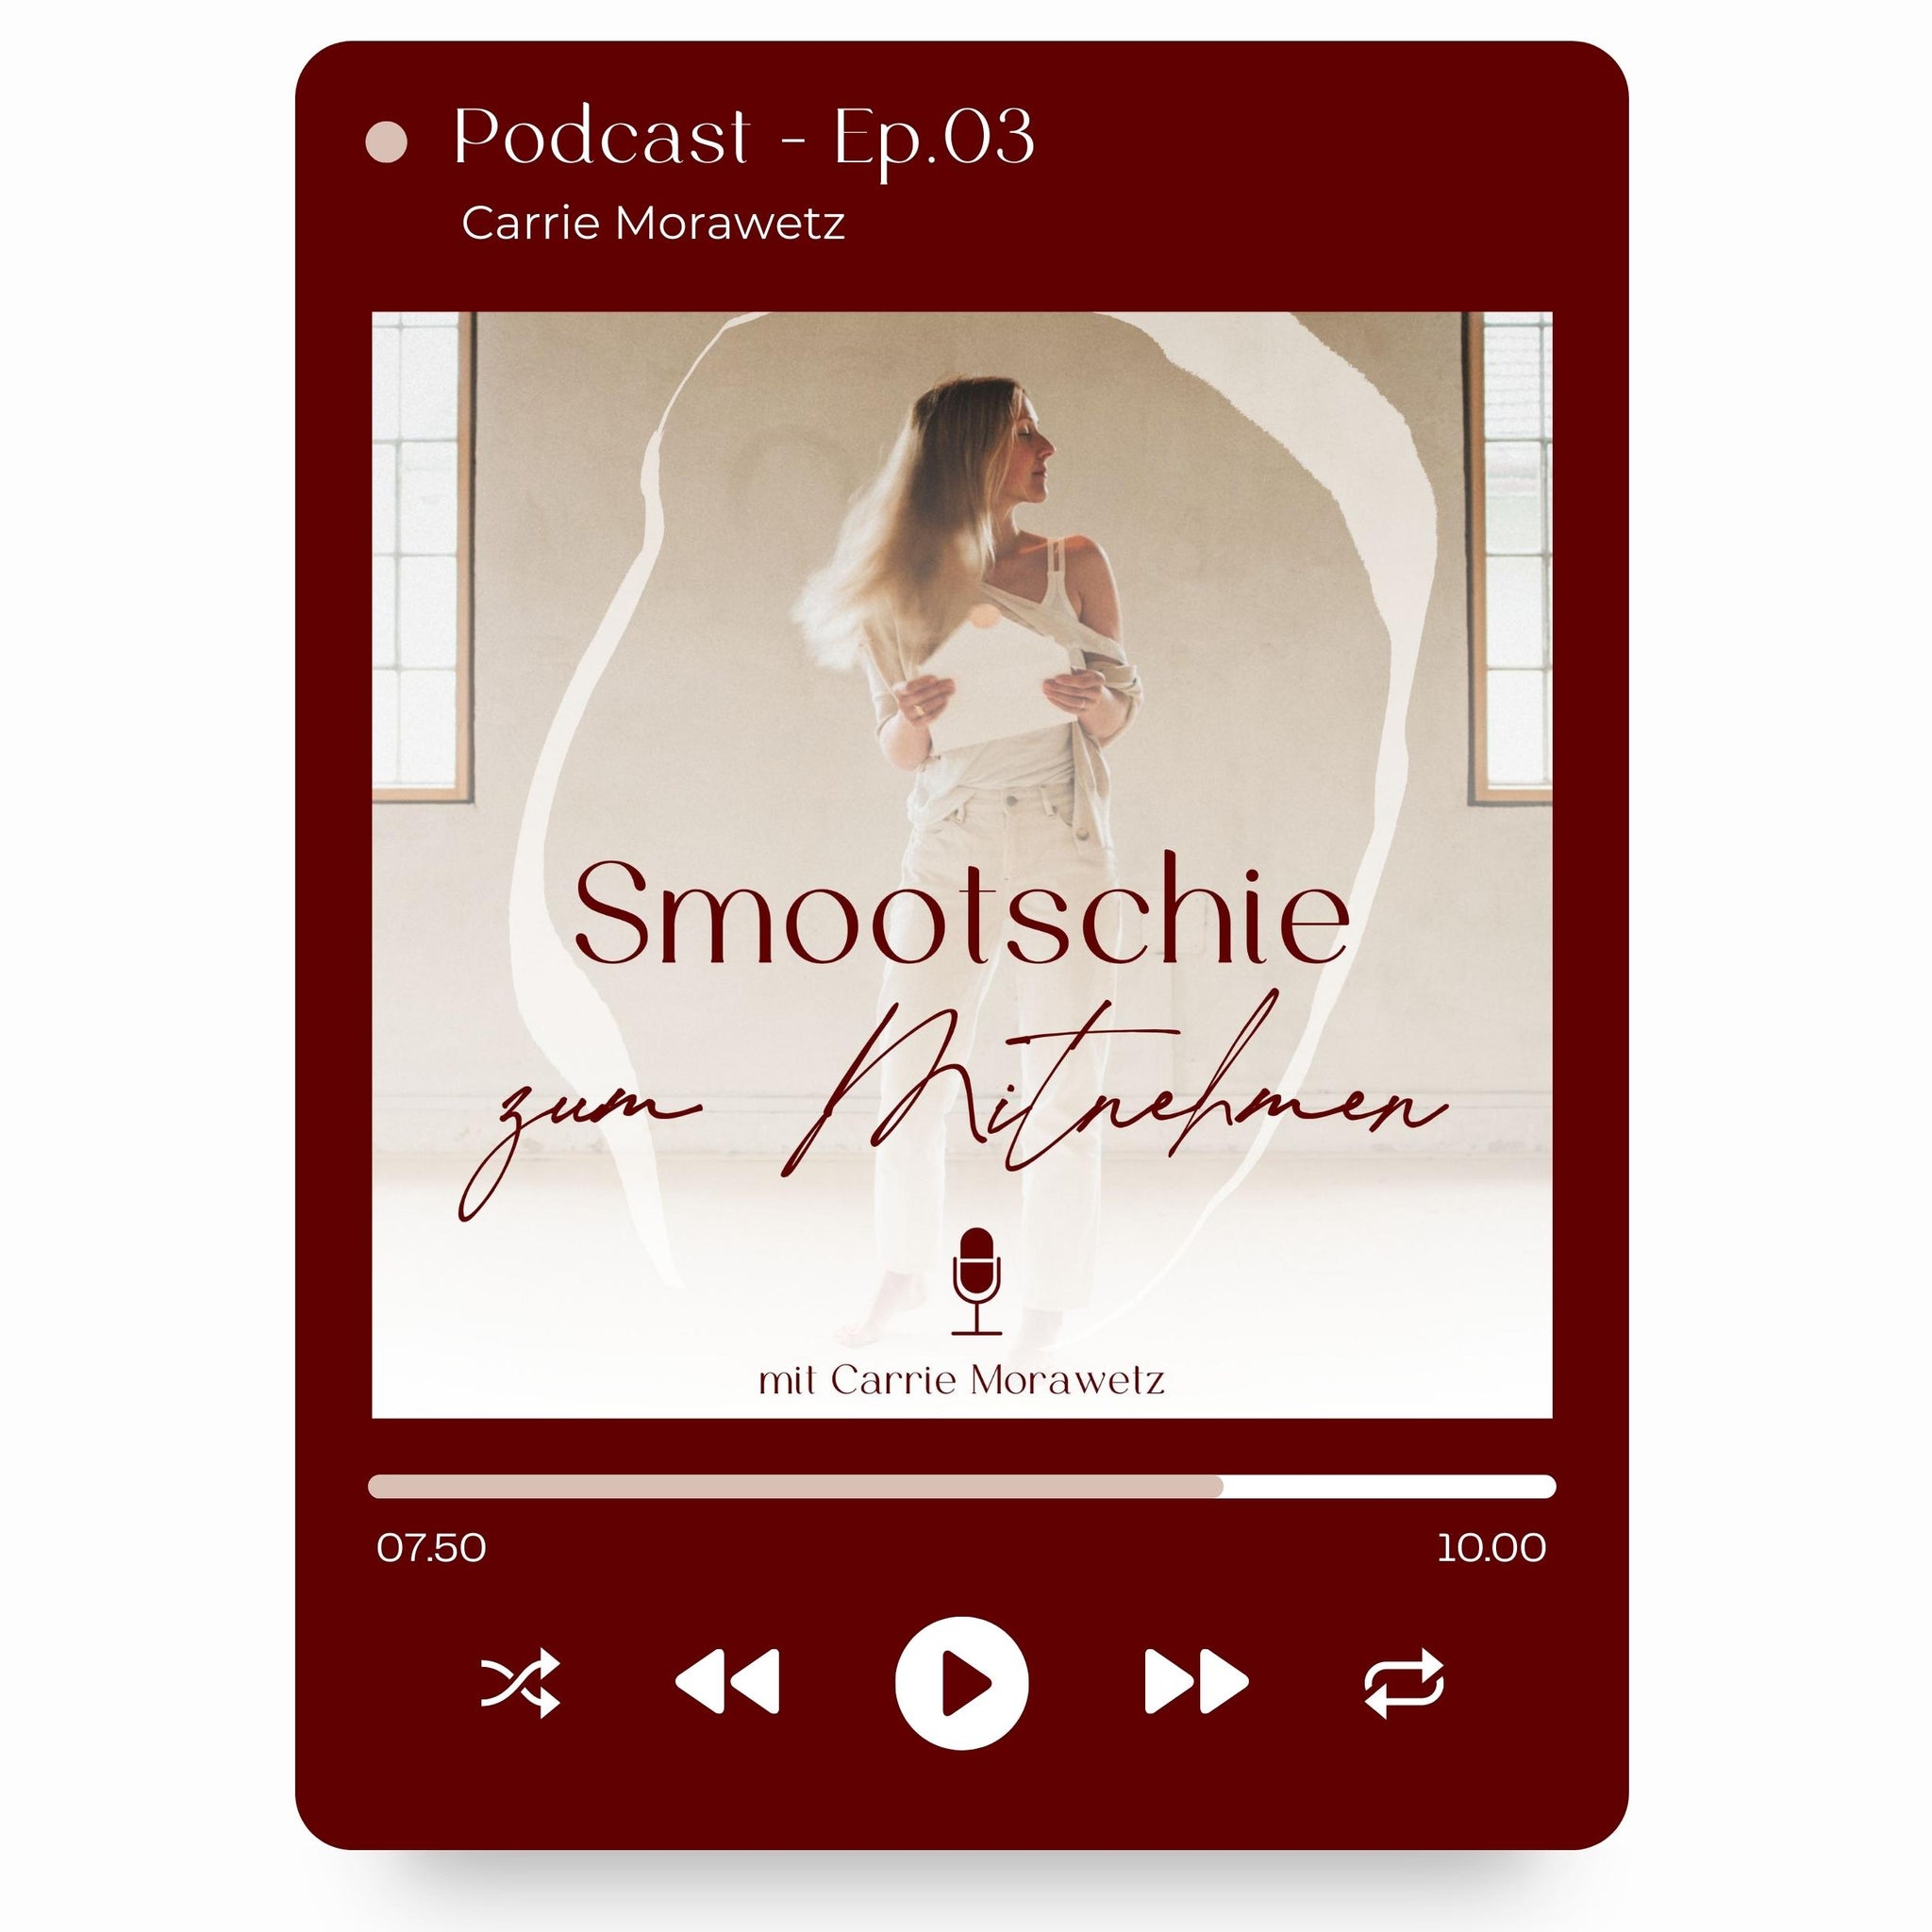 Eine Podcastfolge wird abgespielt mit dem Namen Smootschie zum Mitnehmen von Carrie Morawetz